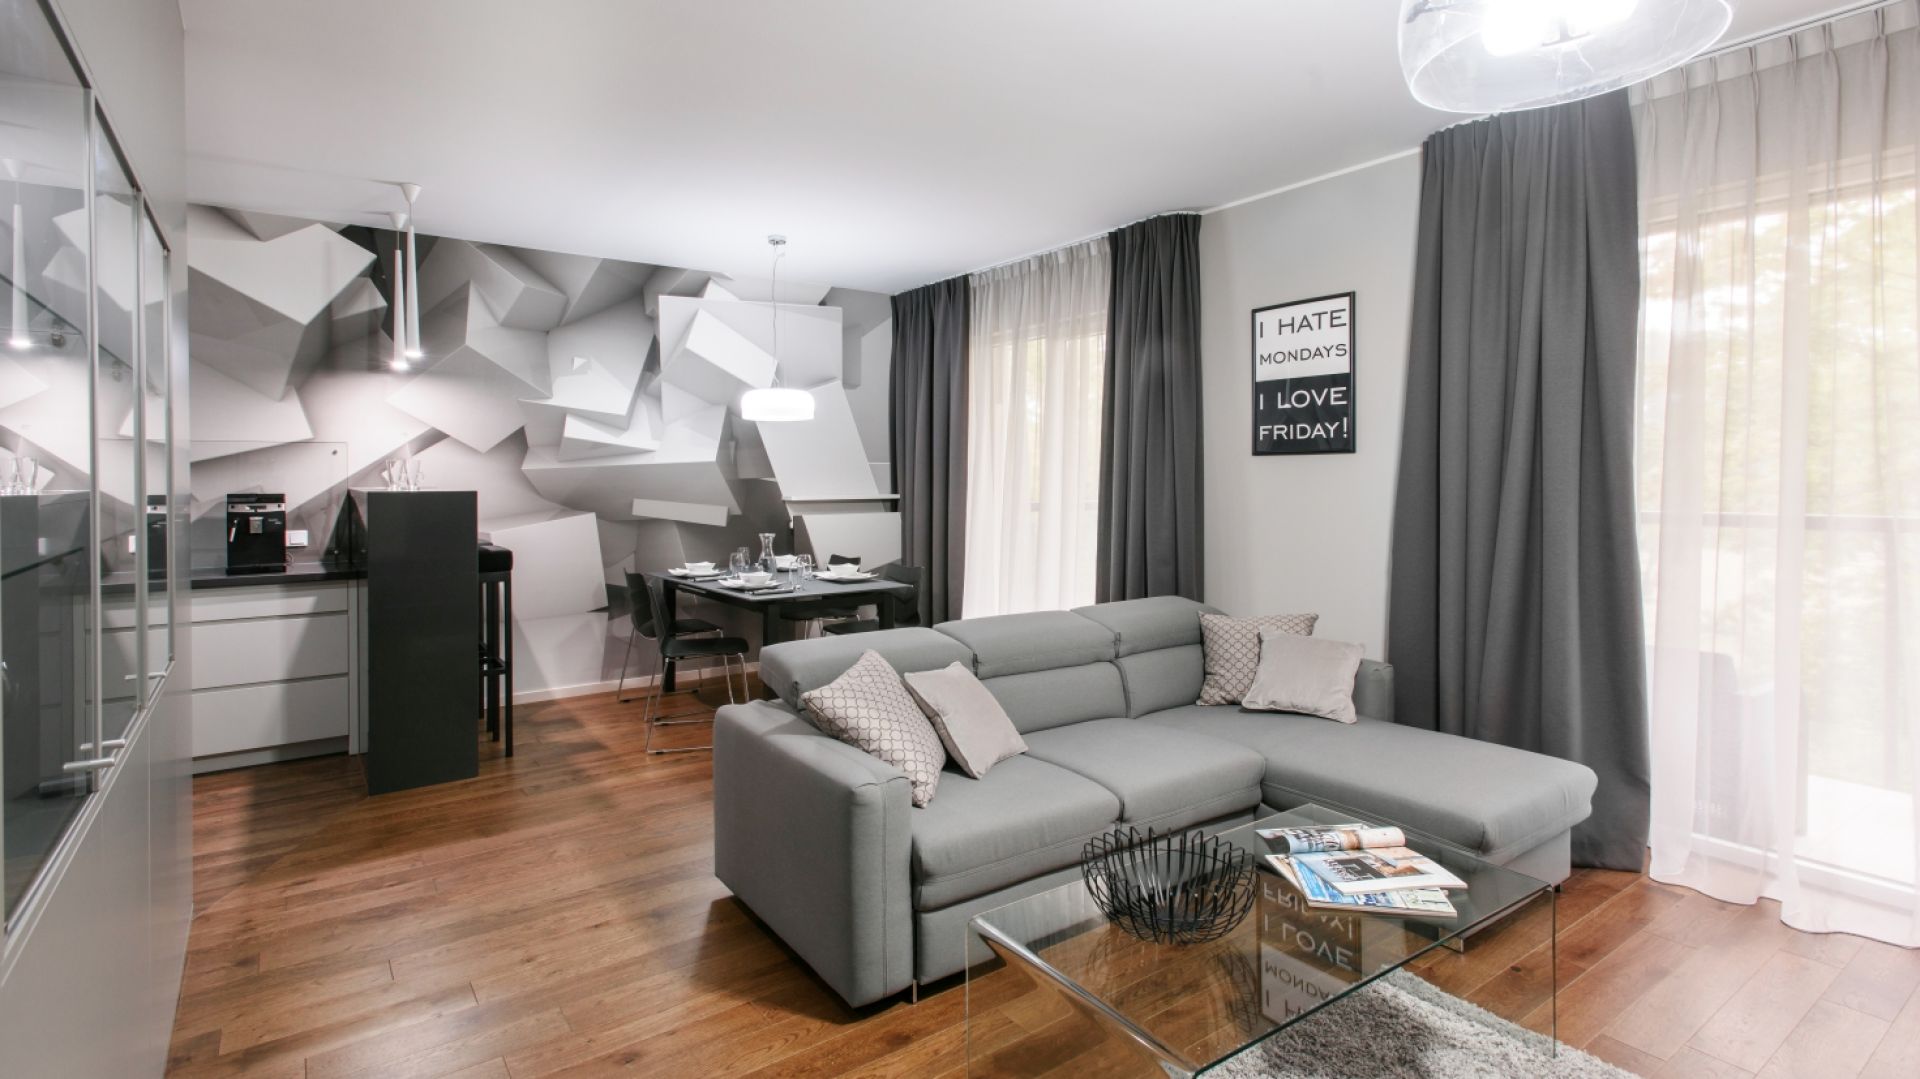 Prostota, funkcjonalność i minimalizm. Warszawski apartament urządzony przez Dominika Ćwieka